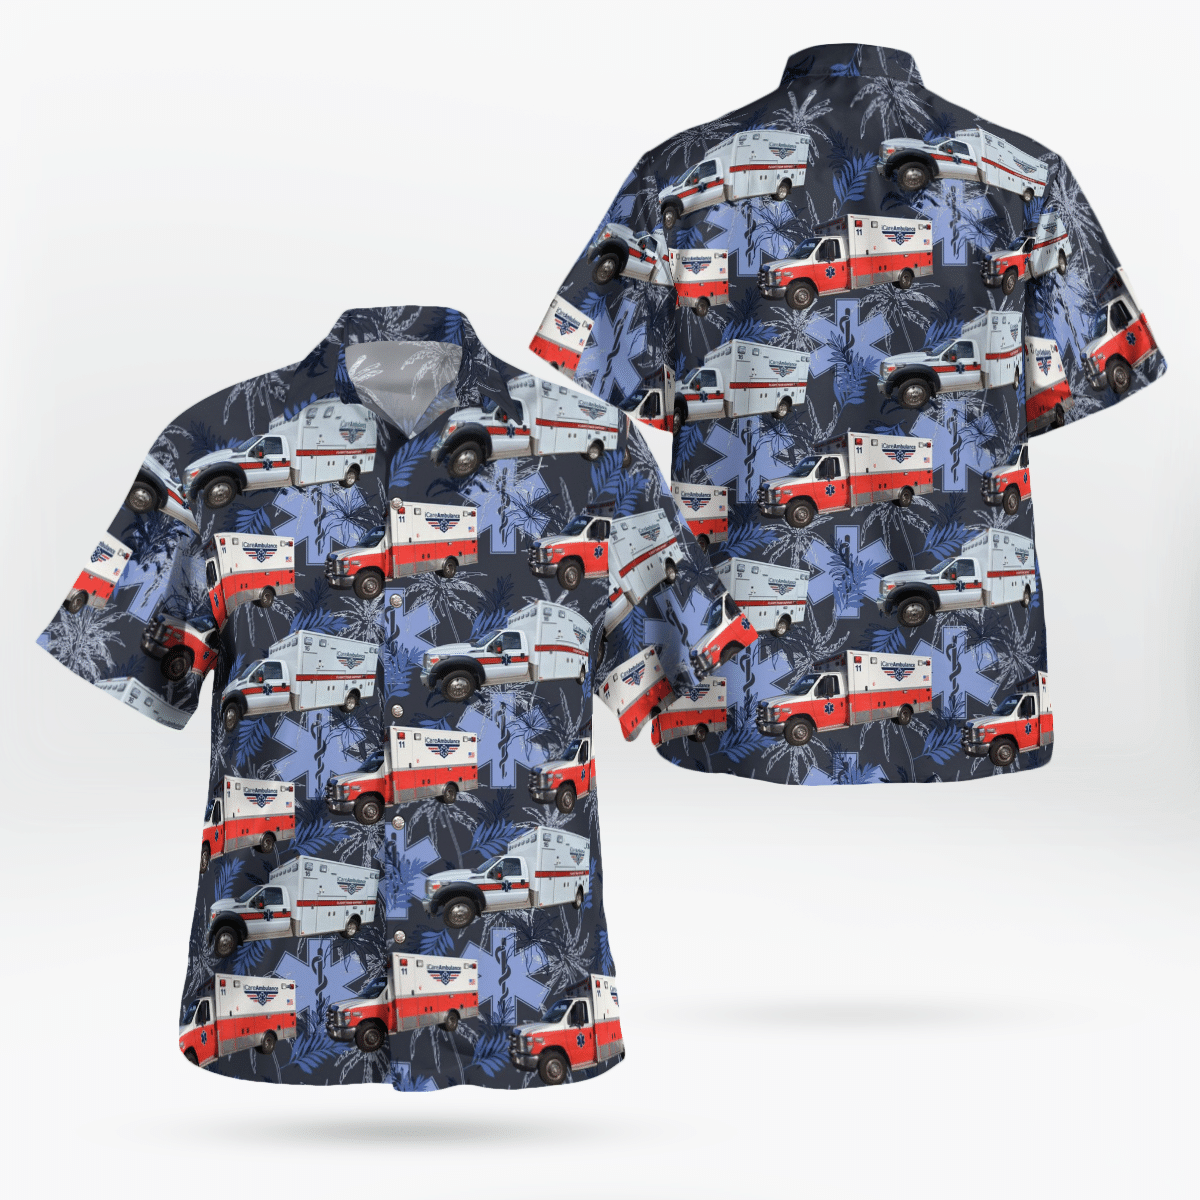 Best Hawaiian shirts 2022 212